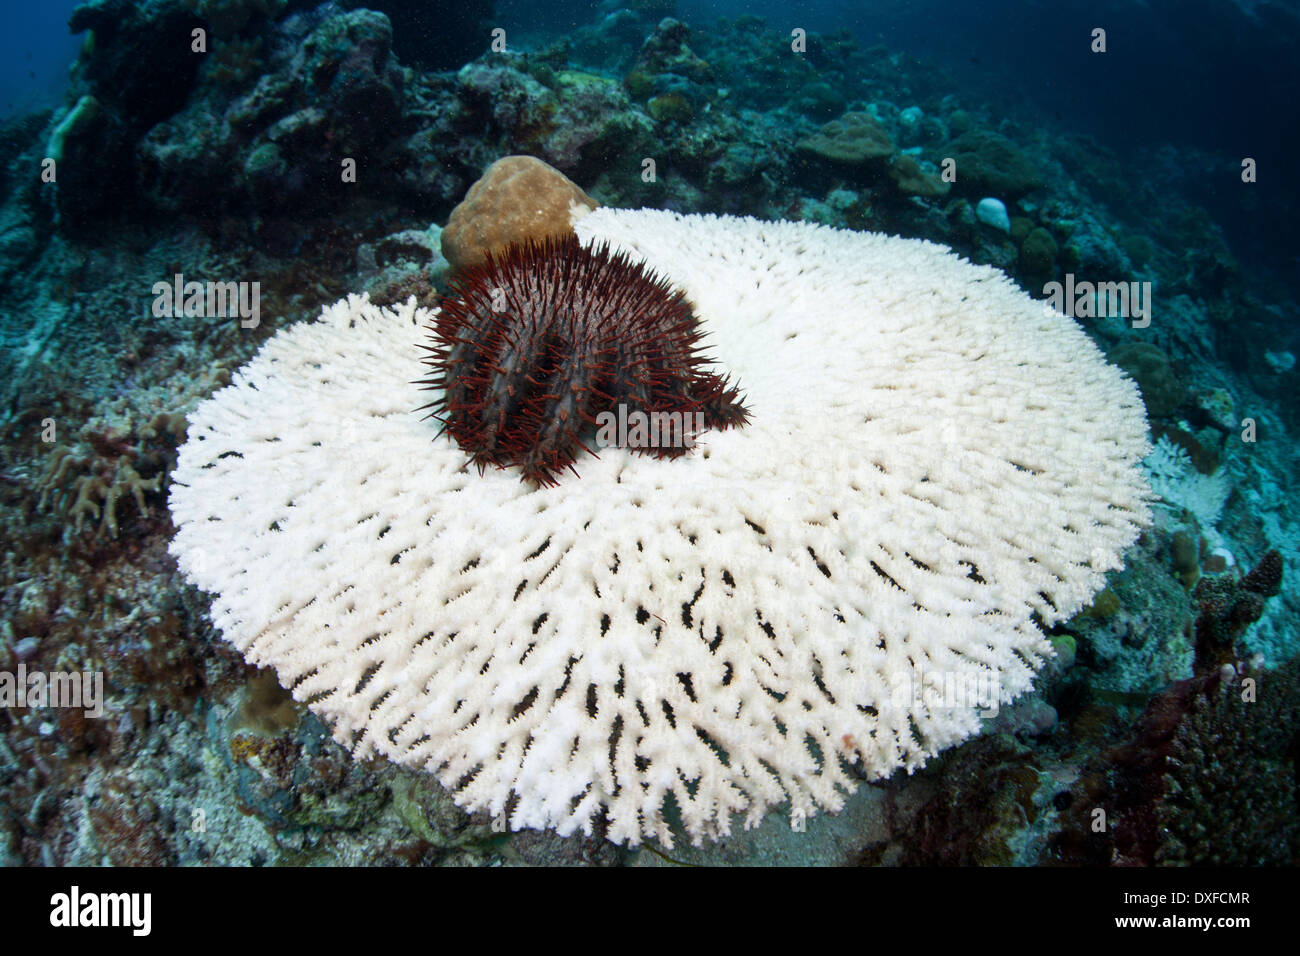 La couronne d'épines sur la table d'alimentation Seastar, corail Acanthaster planci, la Mélanésie, l'océan Pacifique, les Îles Salomon Banque D'Images